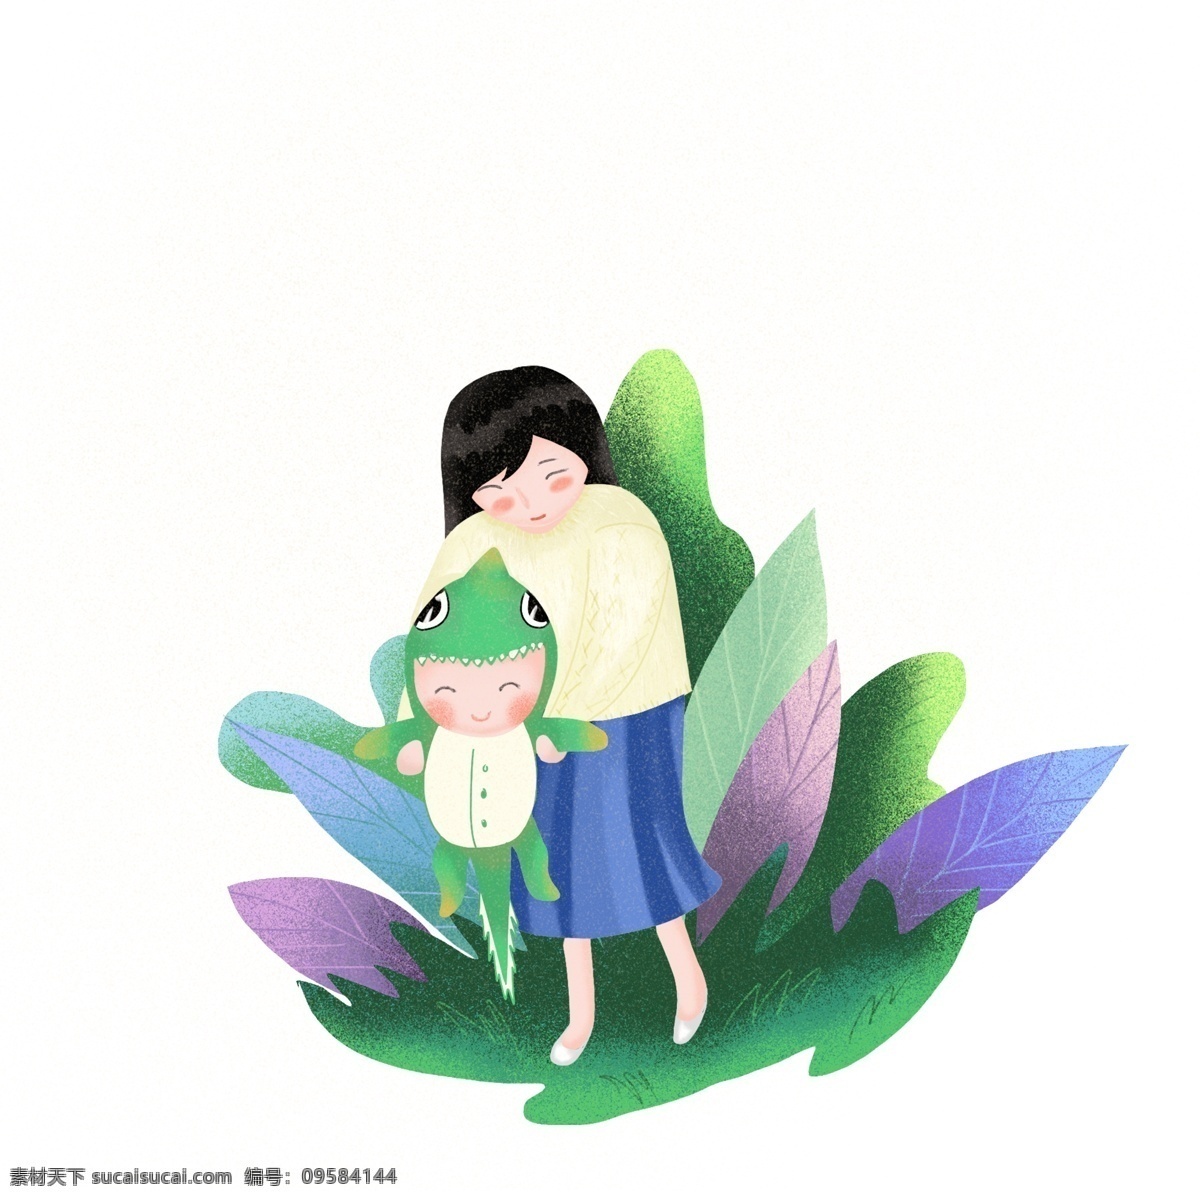 妈妈 宝贝 可爱 卡通 母亲节 活动 节日 宝宝 婴儿 妈妈带着宝宝 绿色 植物